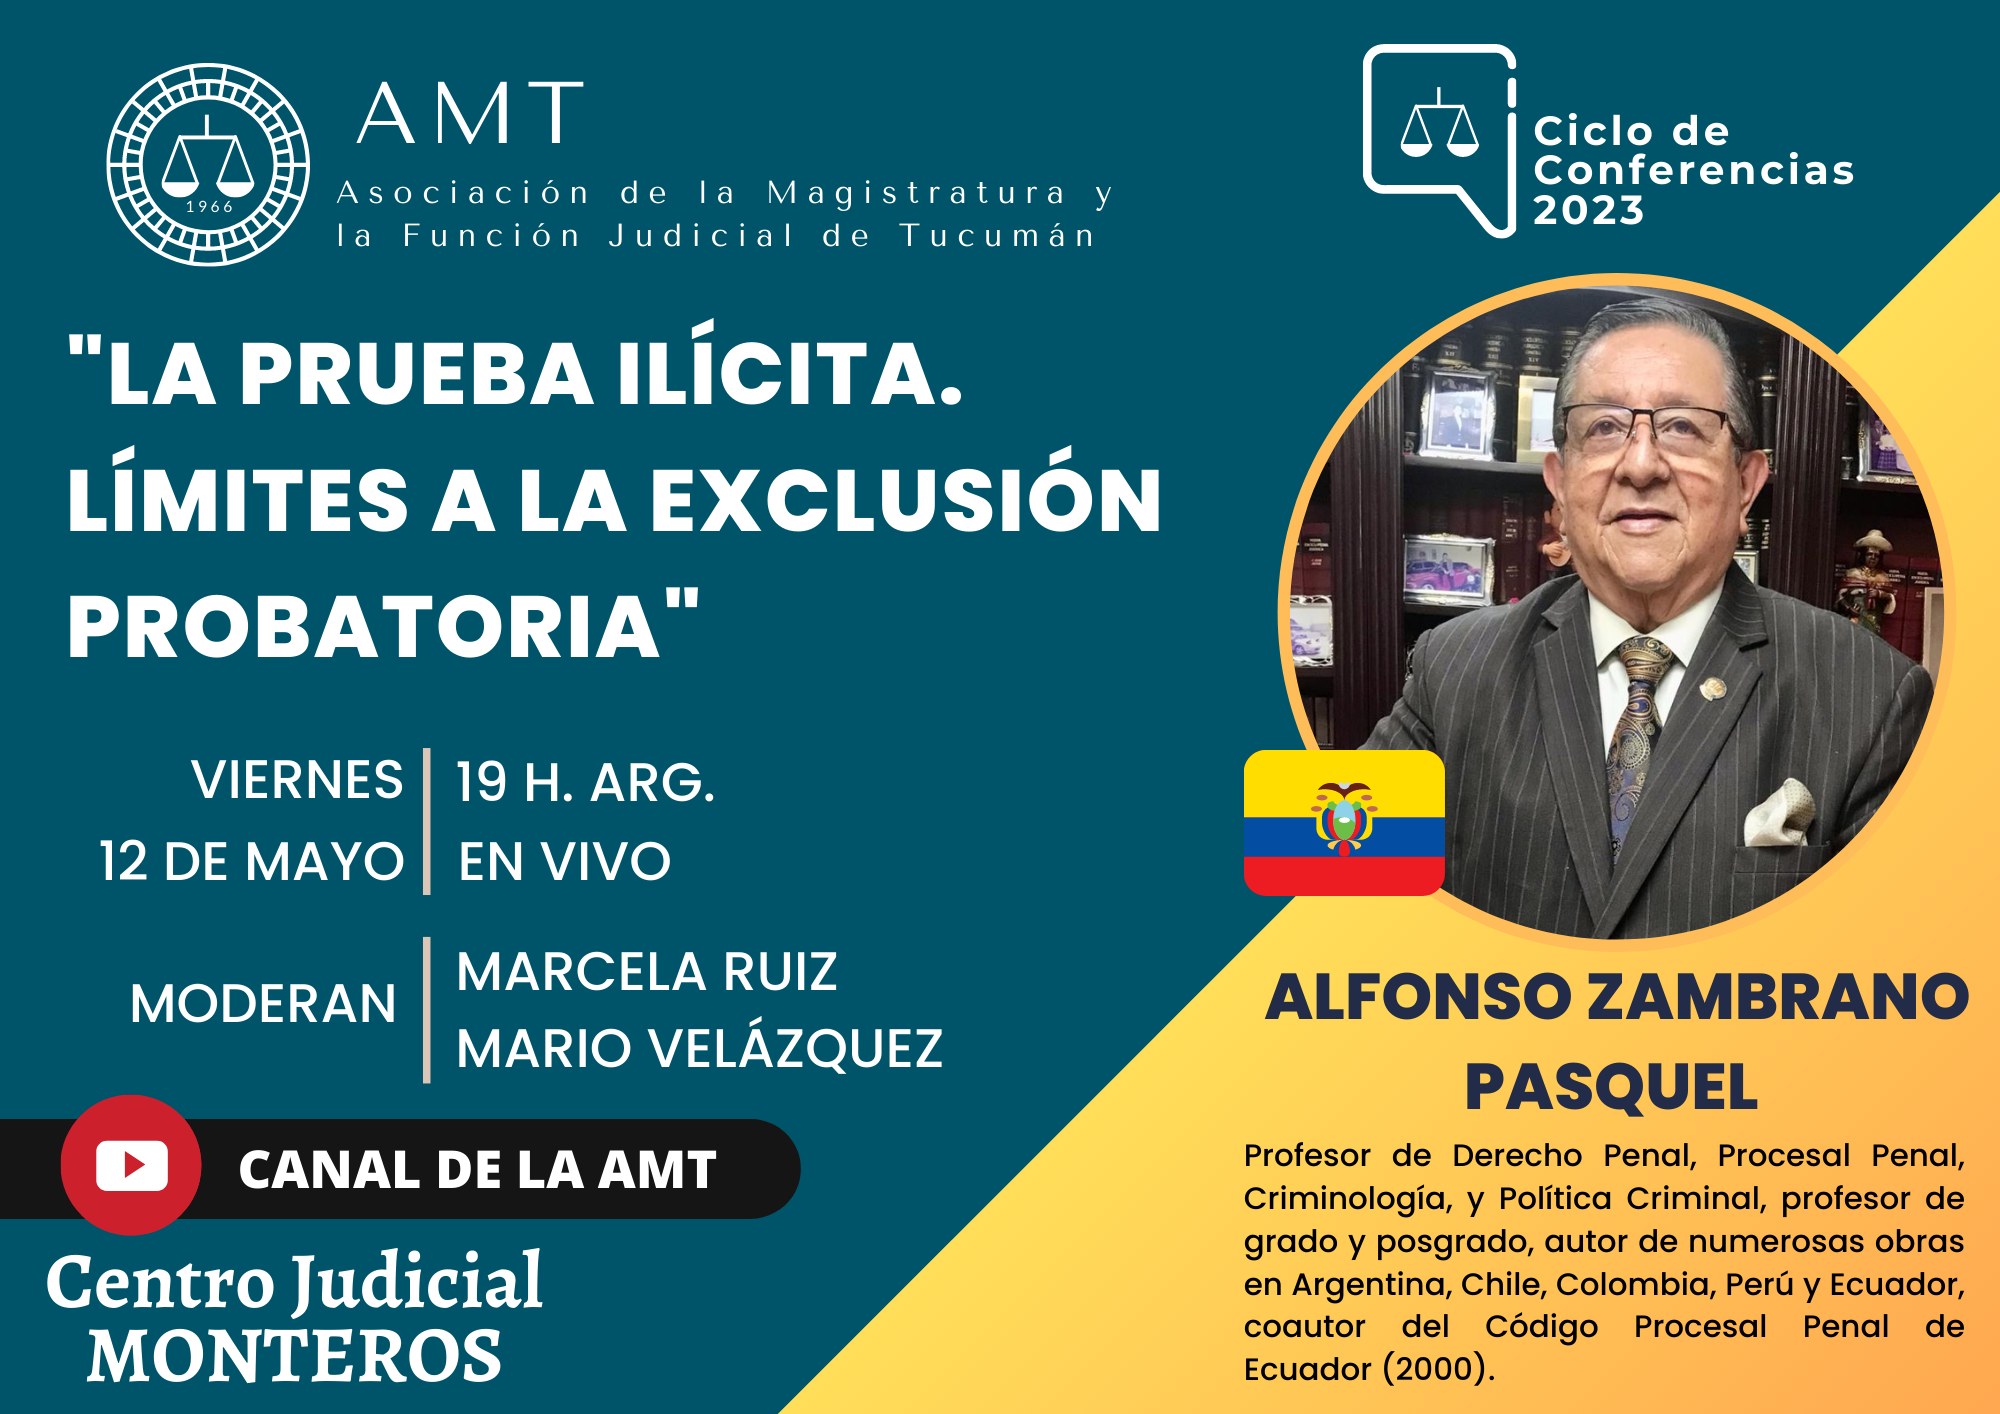 Vuelva a ver la conferencia de Alfonso Zambrano Pasquel «La prueba ilícita»